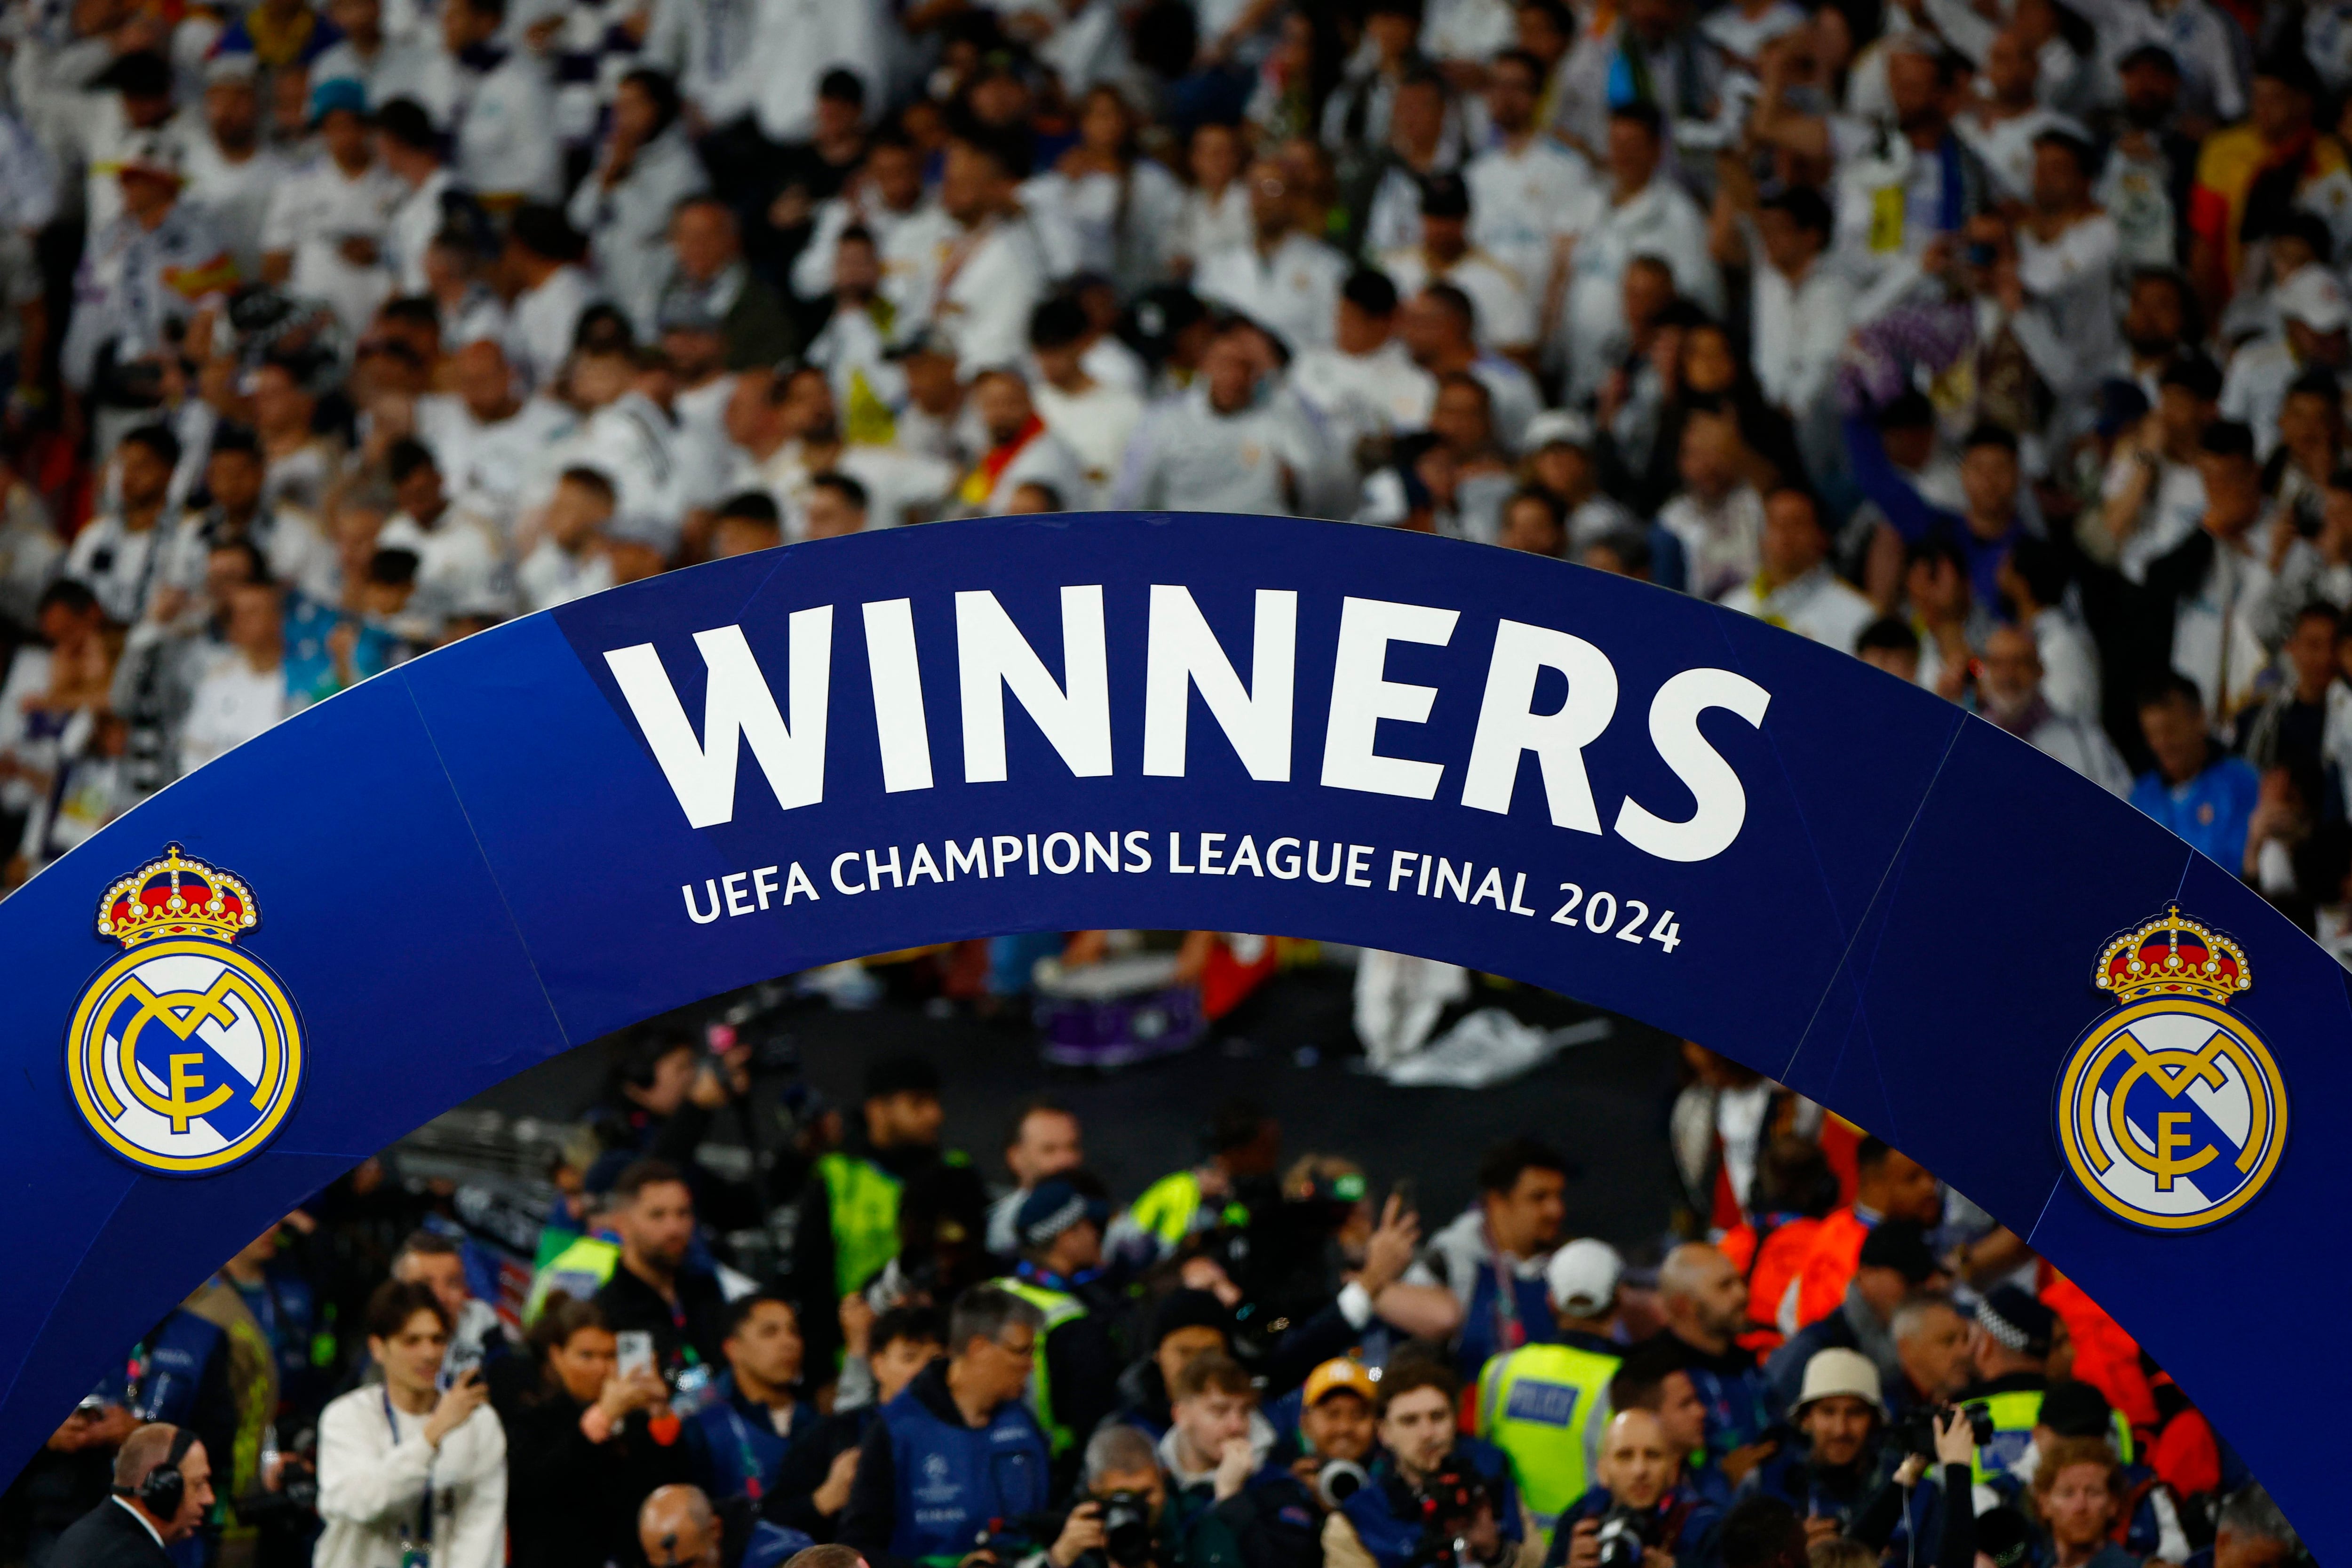 Real Madrid extendió su poderío a nivel europeo y mundial: ganó su 15ª Champions League (REUTERS/Sarah Meyssonnier)